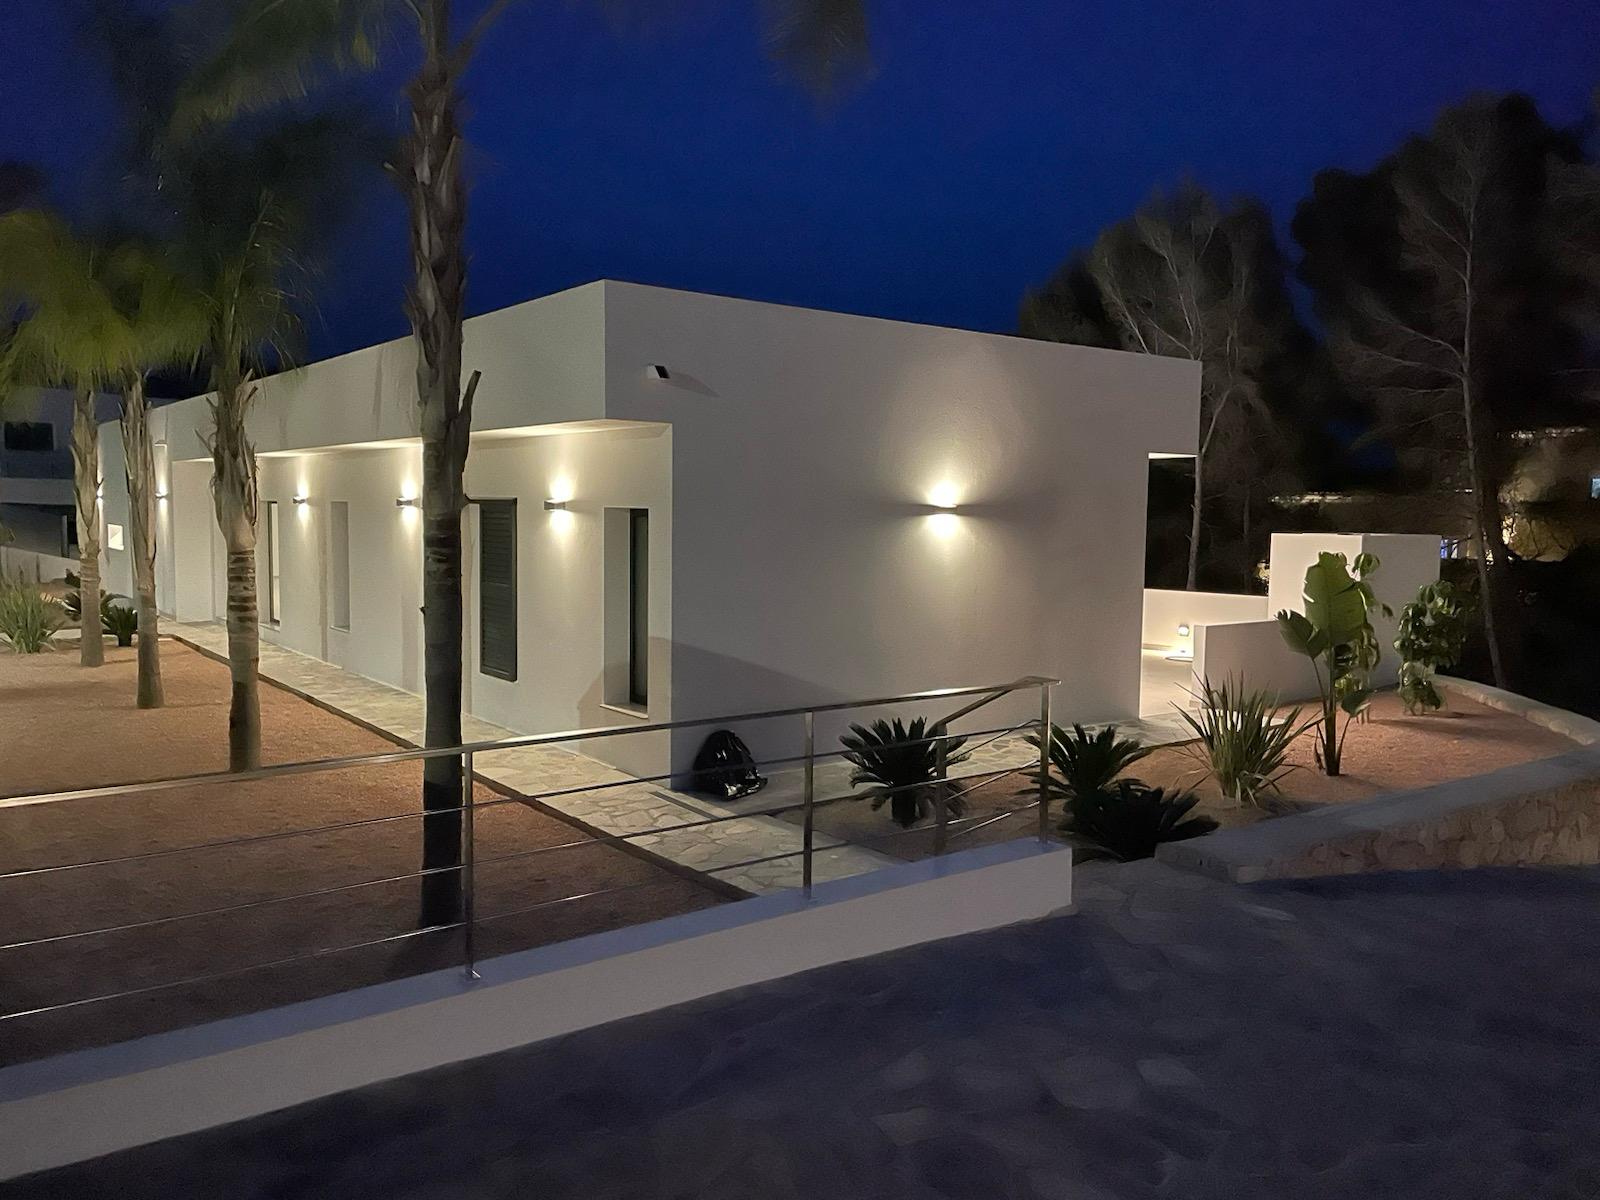 Moderne einstöckige Villa in Meeresnähe in Benissa Costa